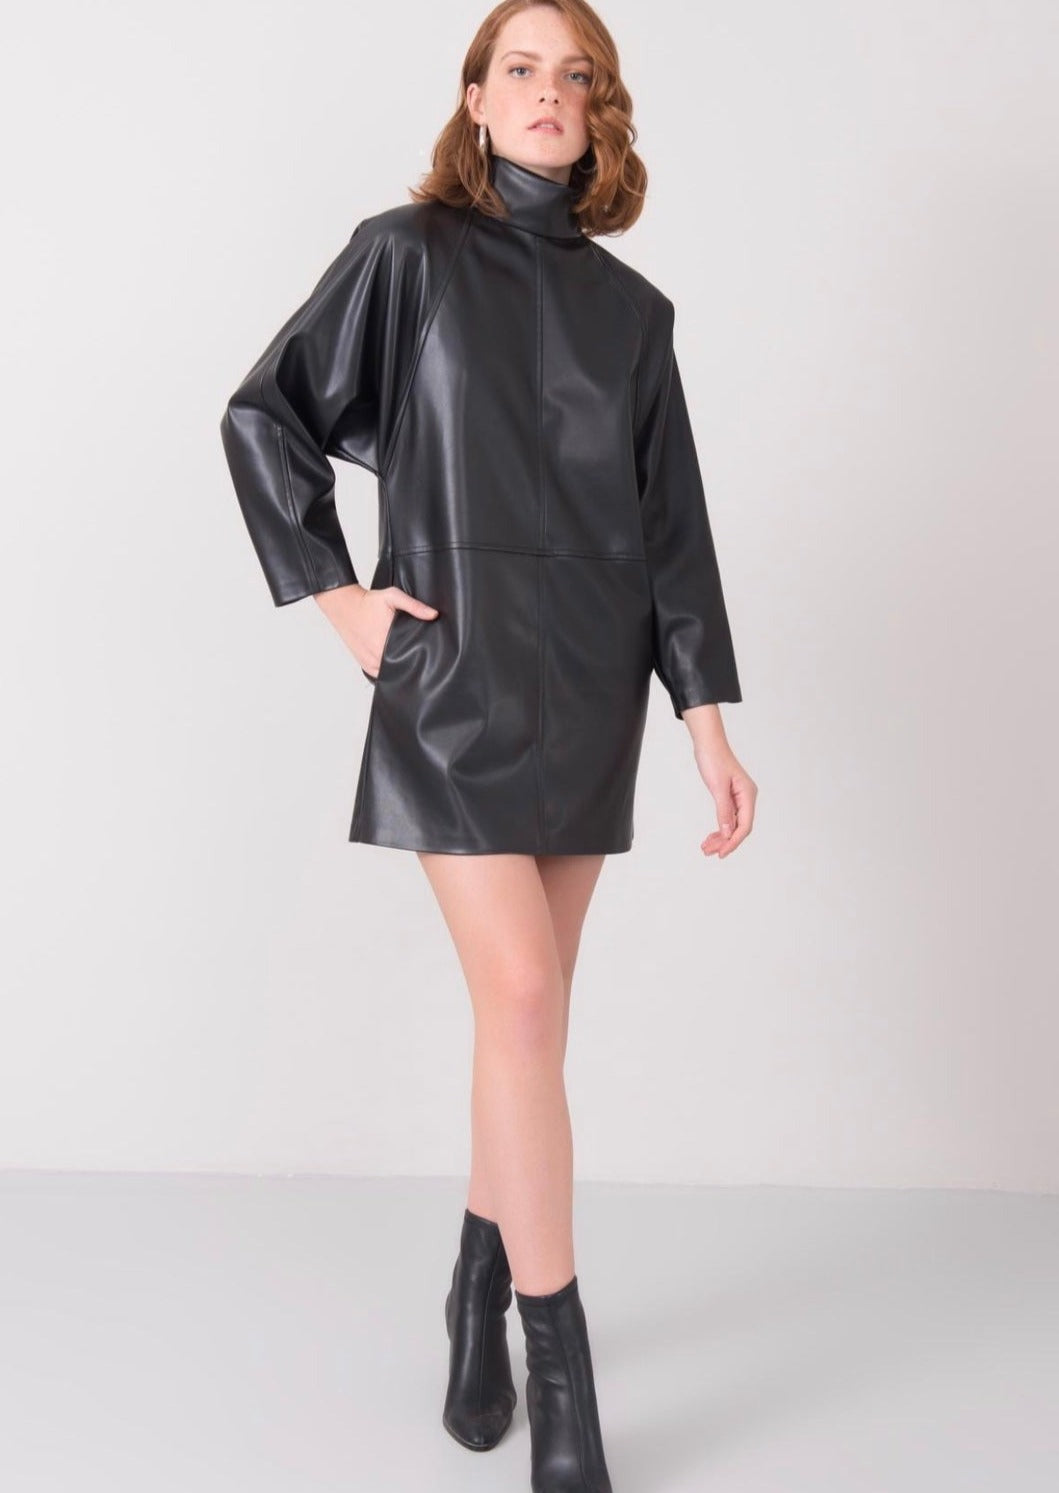 Дамска рокля RALIANA  https://bvseductive.com/products/дамска-рокля-raliana  еко кожа модерна кожена&nbsp; рокля в черен цвят изработена от висококачествена еко кожа&nbsp; чудесен избор за Вашата визия